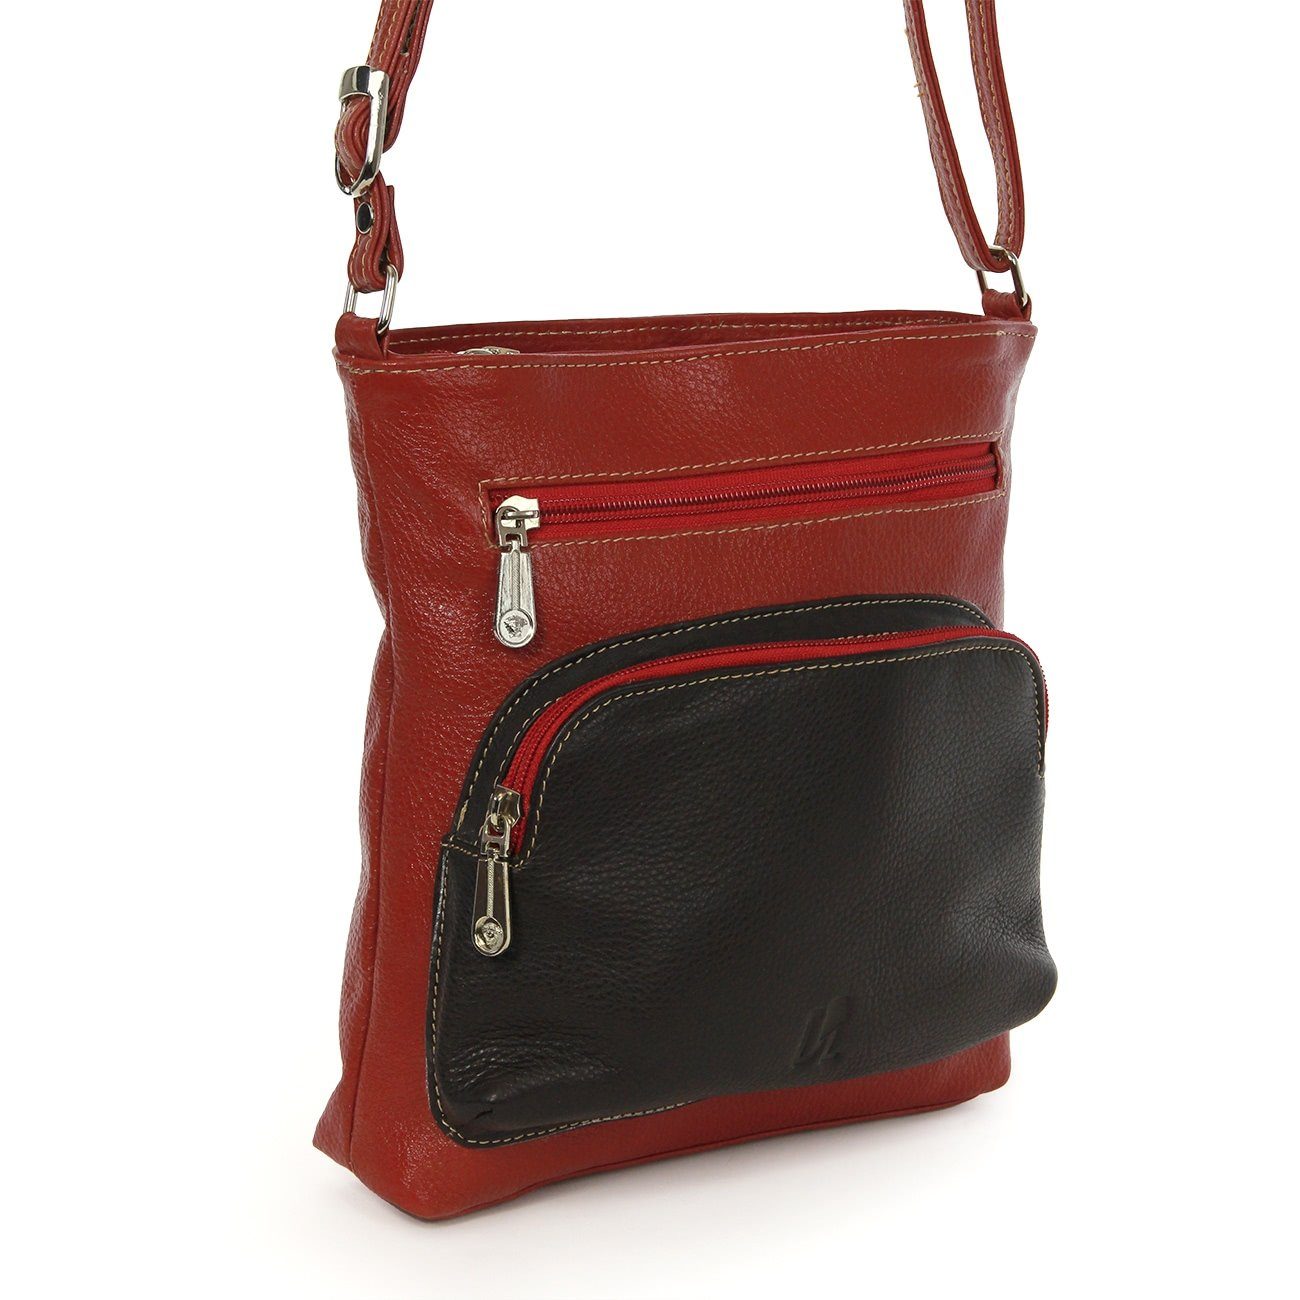 DrachenLeder Damen (Handtasche), braun Damen Handtasche OTZ900X Handtasche Tasche, DrachenLeder schwarz, Echtleder rot